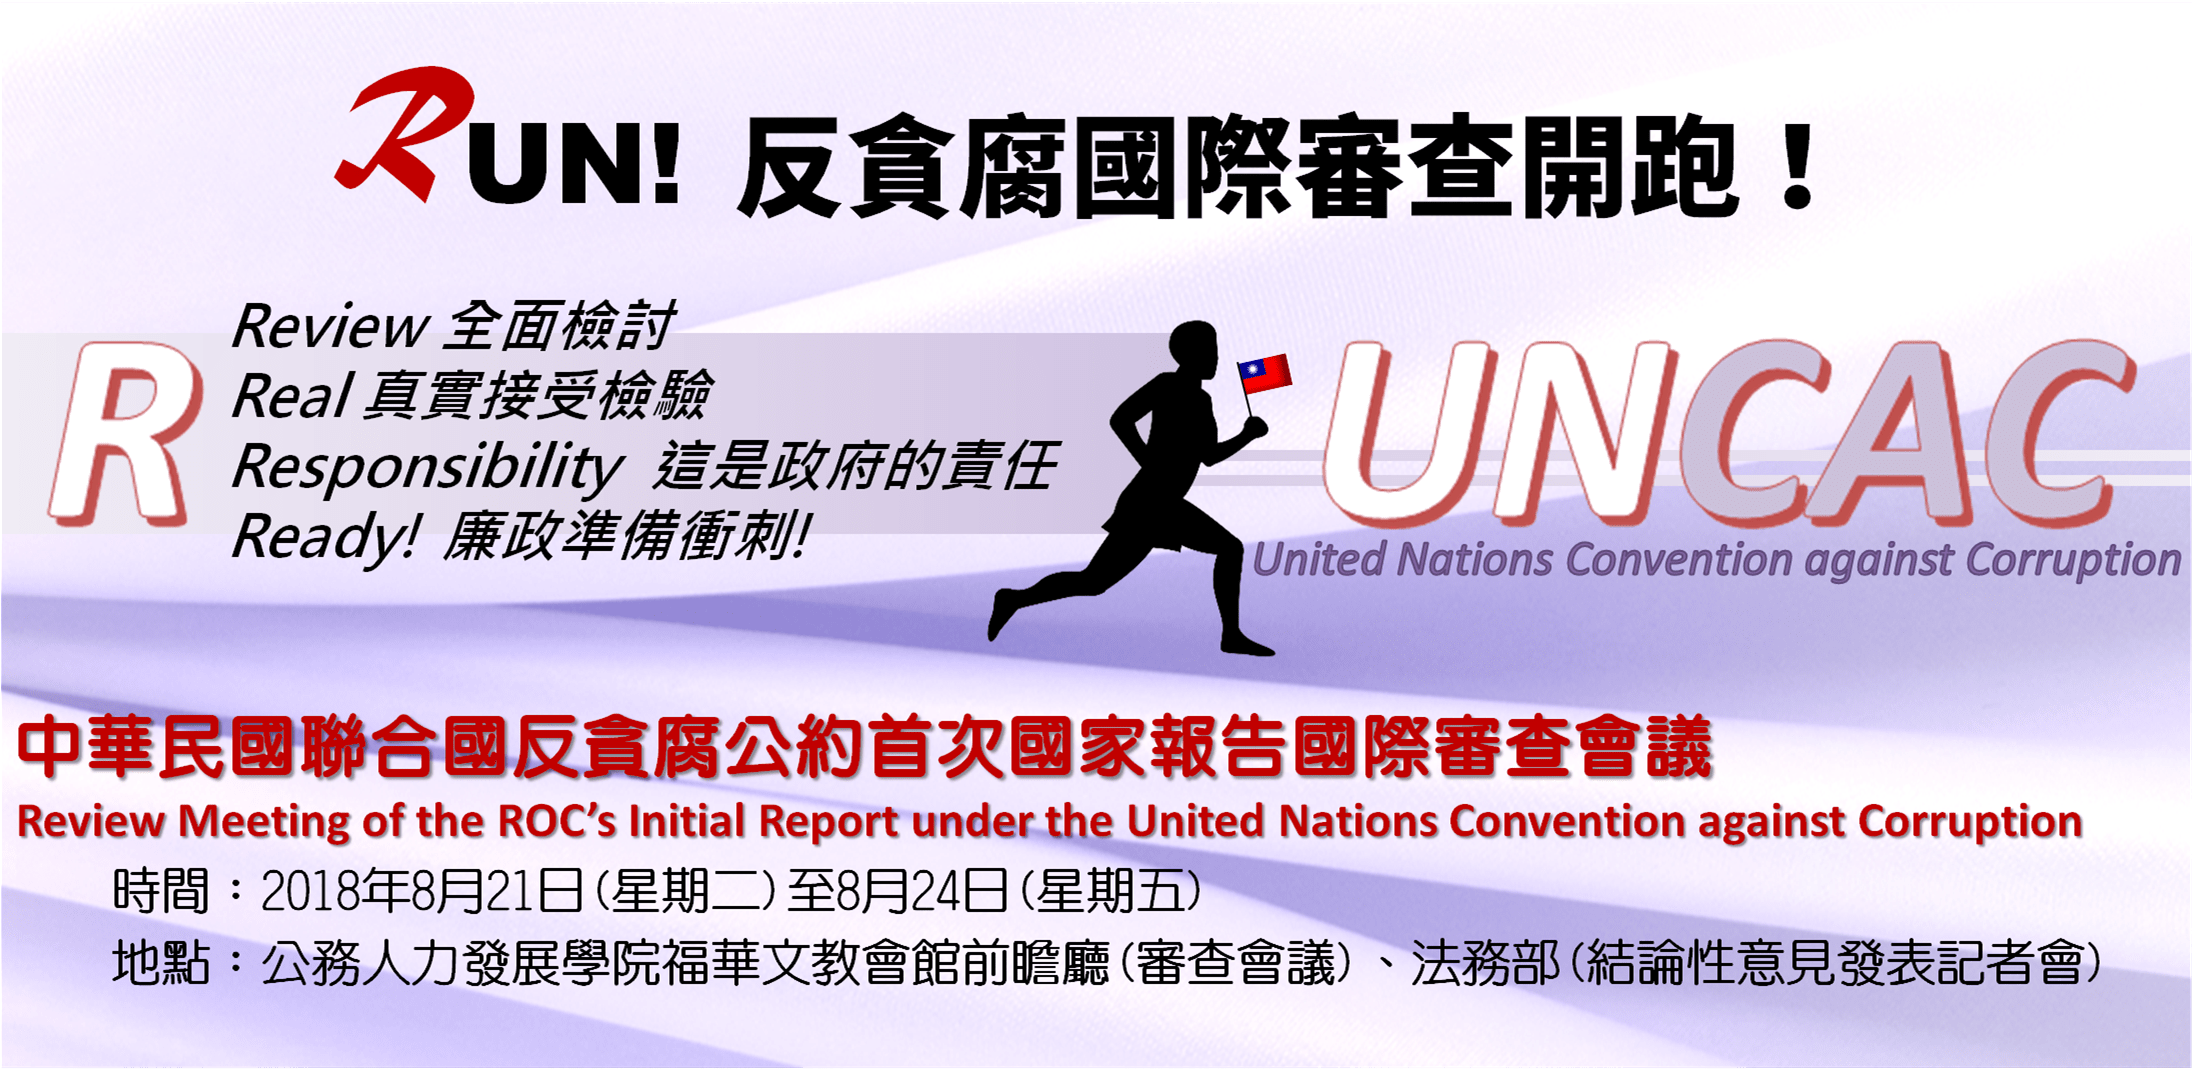 「中華民國聯合國反貪腐公約首次國家報告」宣導海報